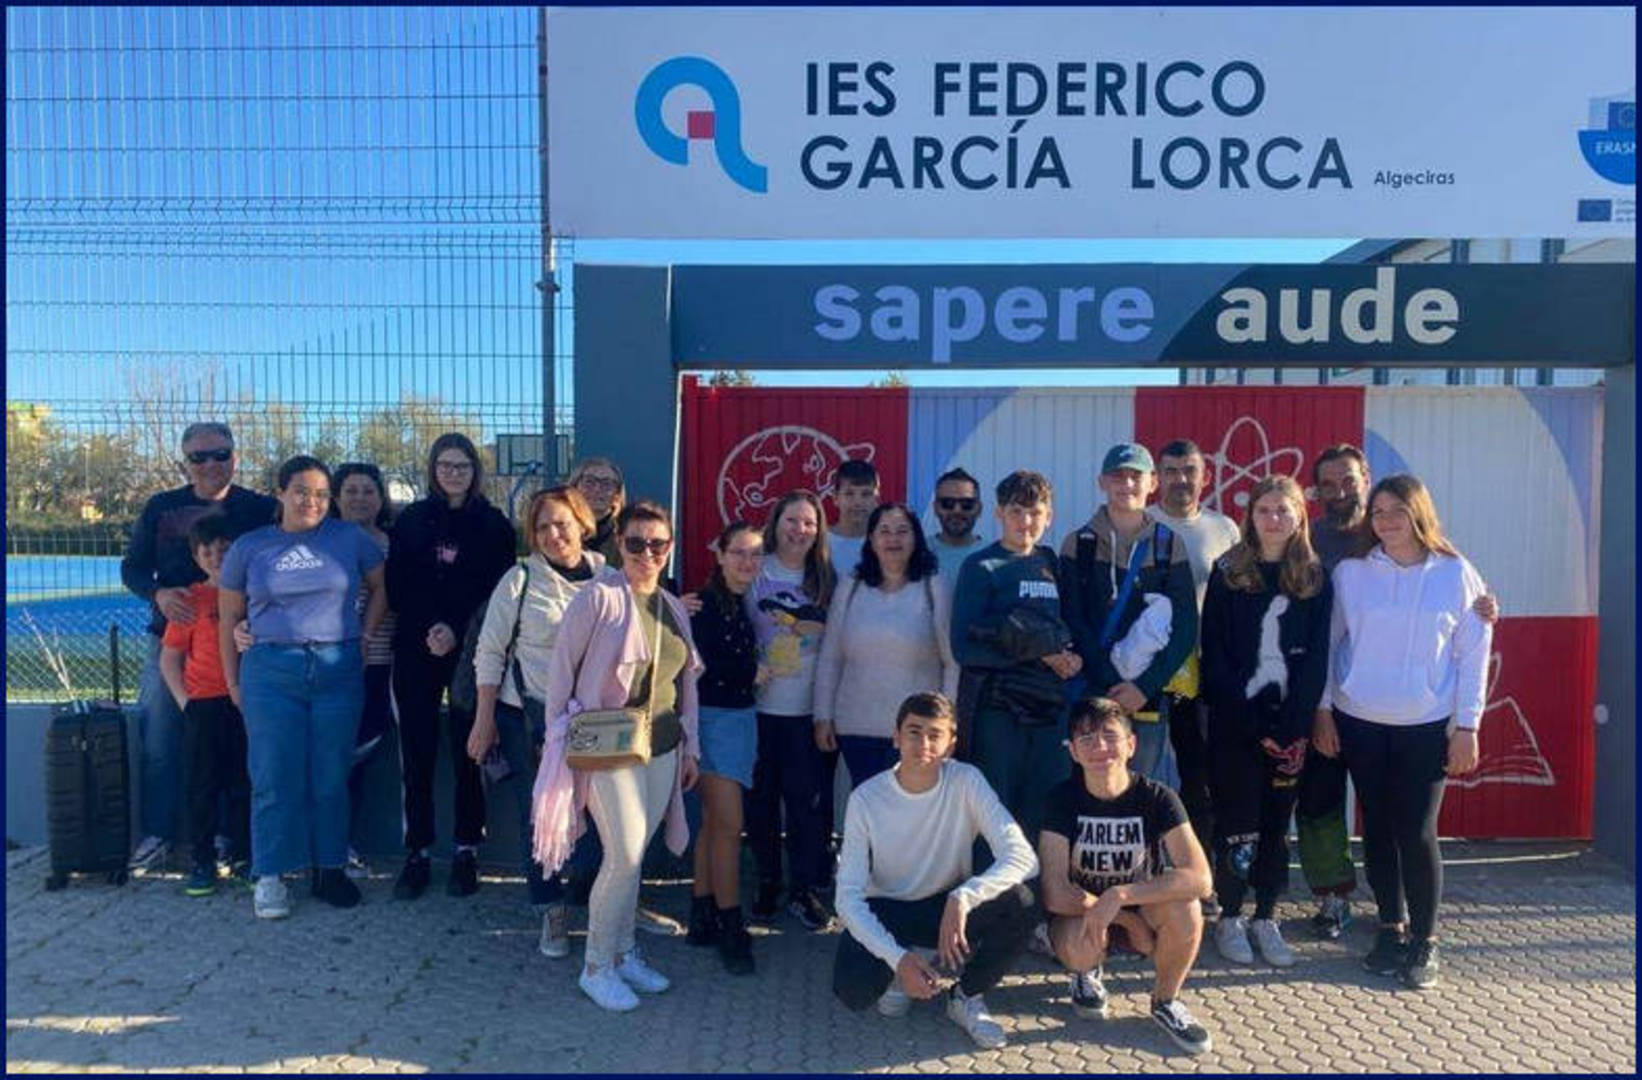 Grupowa mobilność uczniów-Algeciras, Hiszpania. Uczniowie naszej szkoły wraz z rodzinami goszczącymi